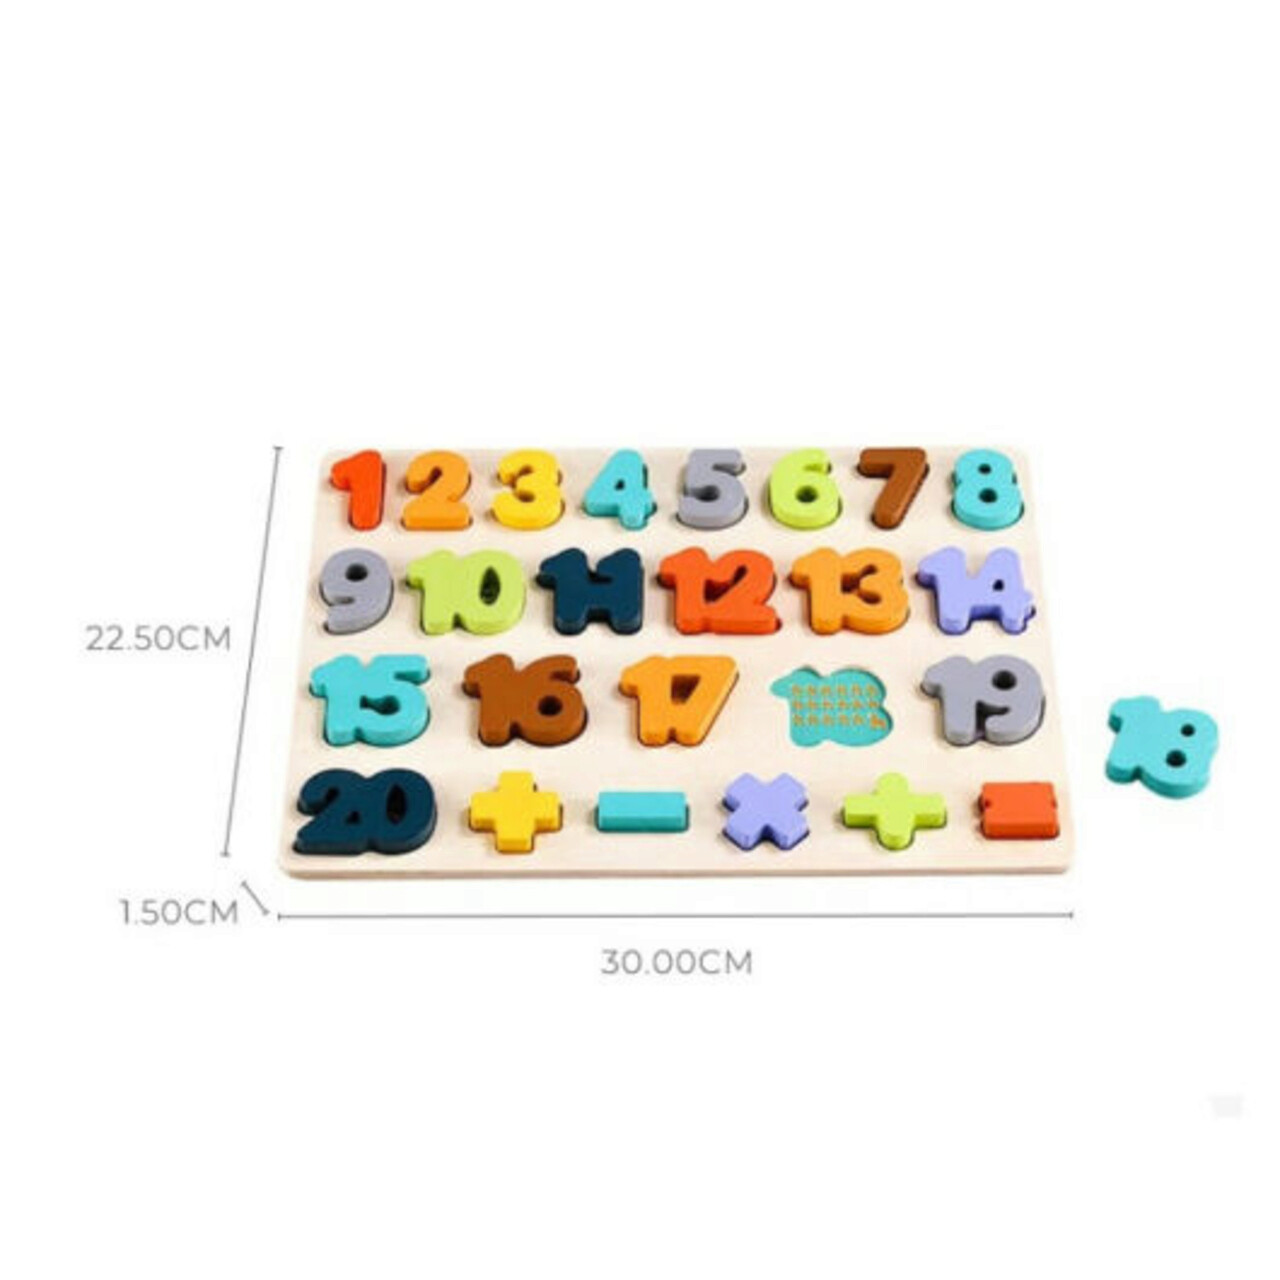 Puzzle Incastru Din Lemn Cu Numere De La 1 La 20, 26 Bucati, Phoohi, PH07J012, Multicolor